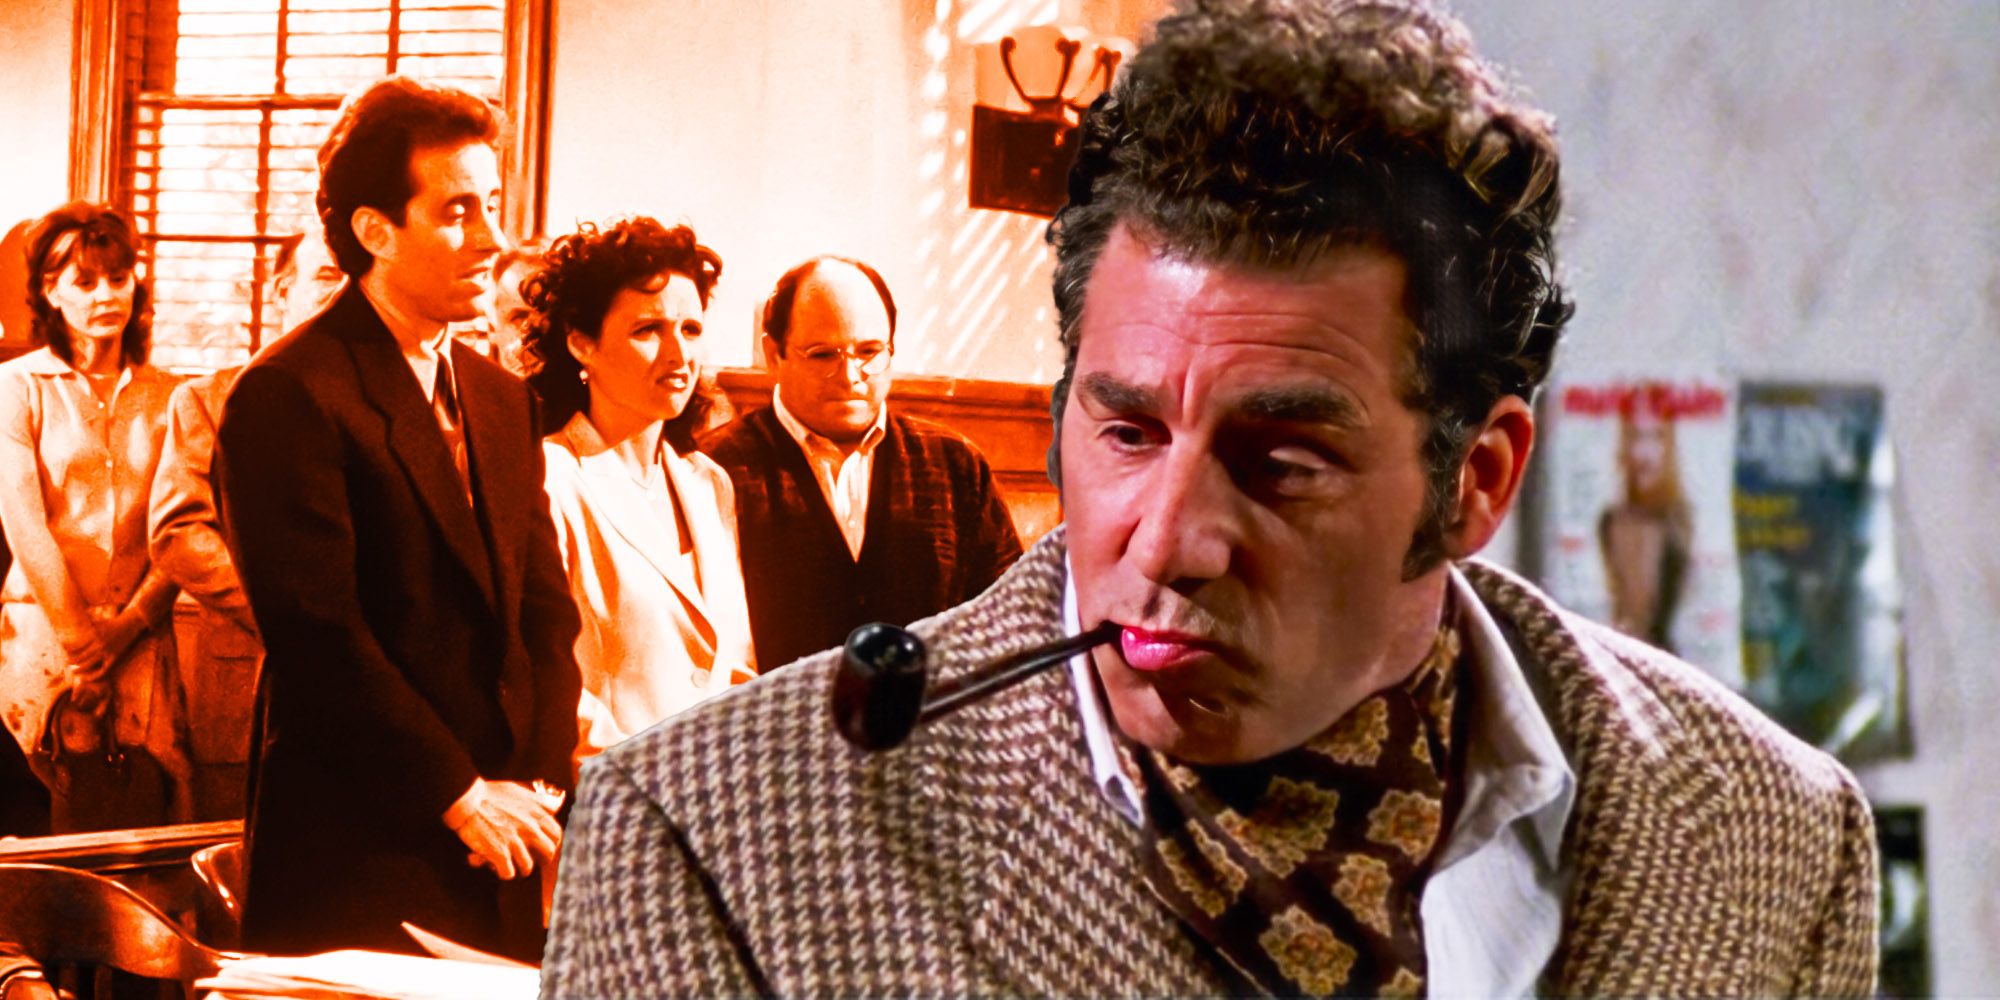 Seinfeld cast and Kramer